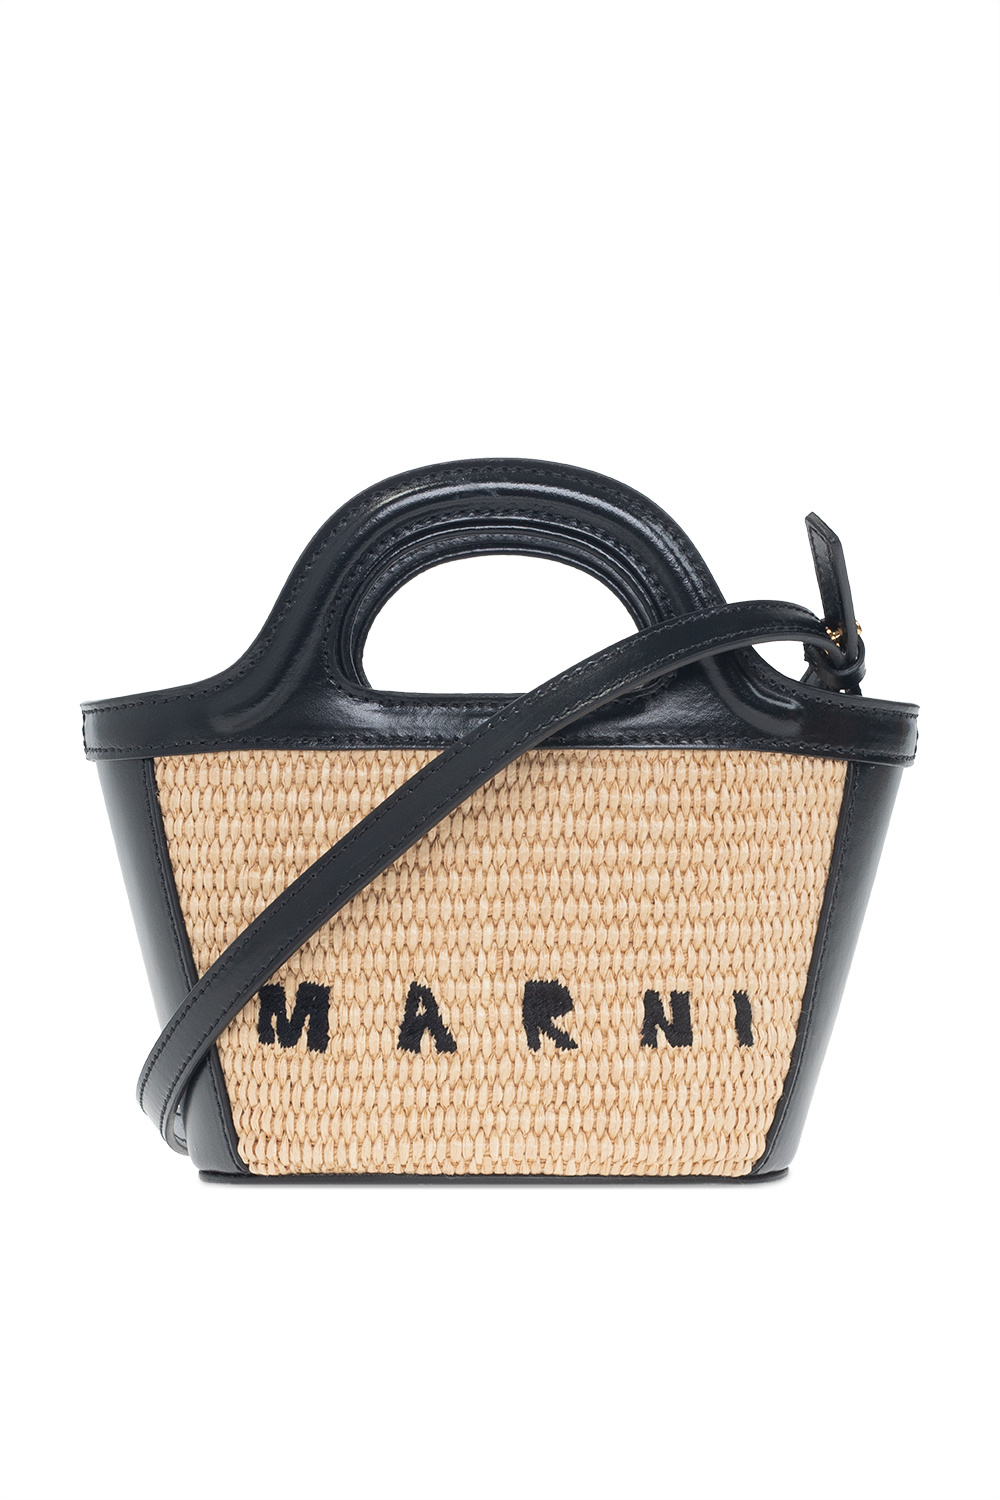 Tropicalia Summer Micro' shoulder bag Marni - IetpShops VC